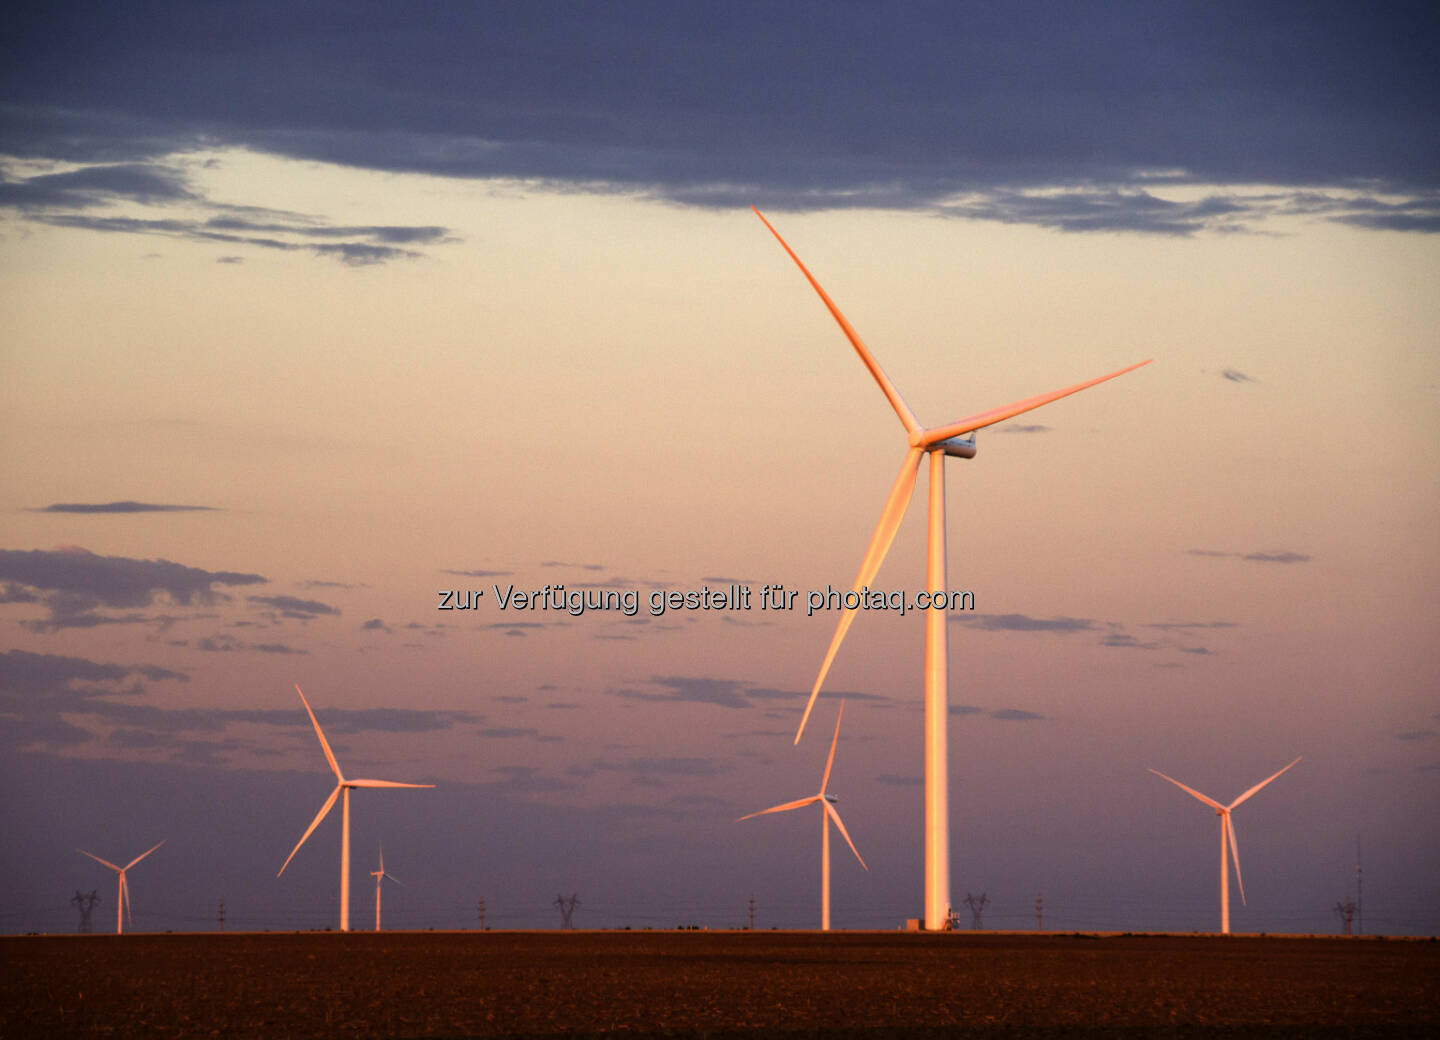 Siemens AG erhält Auftrag über Bau und Service von 79 Windkraftanlagen in Texas - Das geplante Windkraftwerk Panhandle 2 besteht aus 79 Anlagen vom Typ Siemens SWT-2.3-108. (Bild: Siemens)